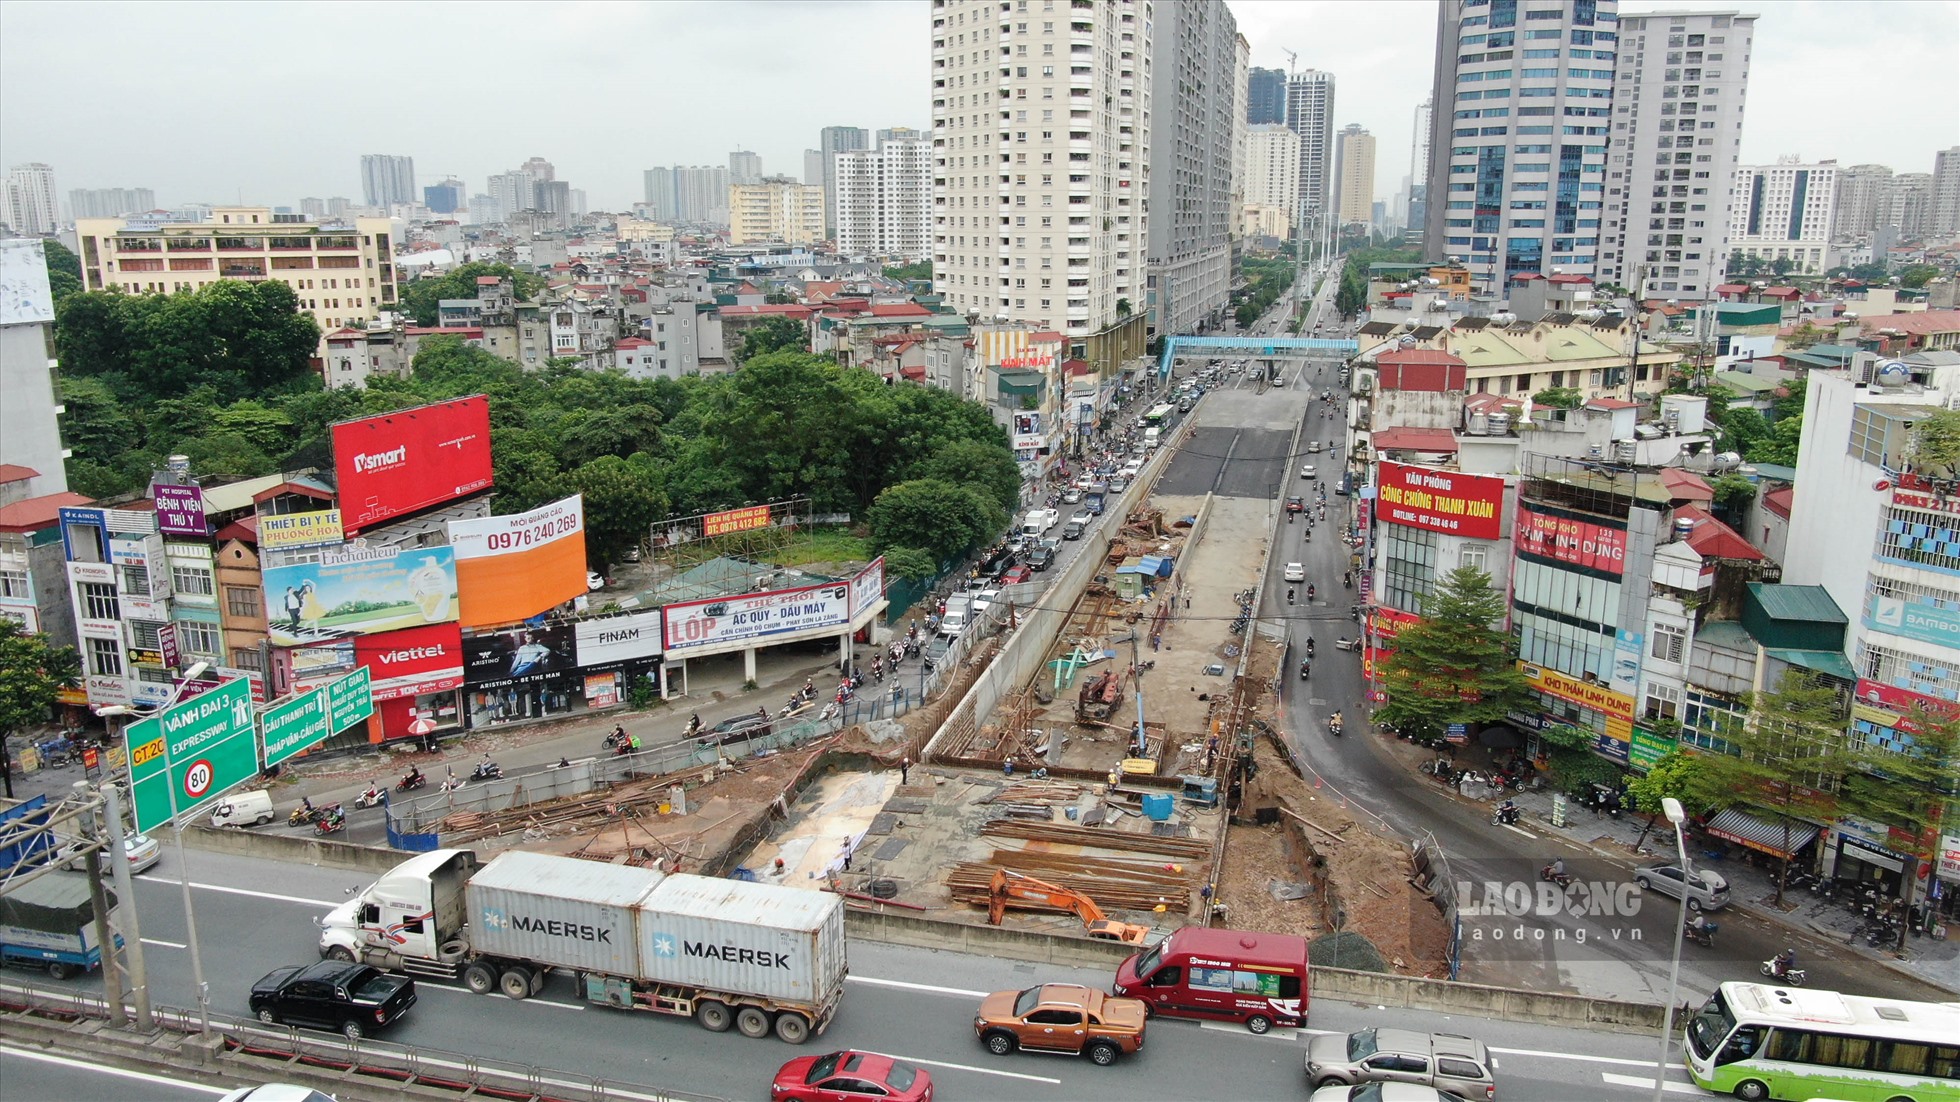 Dự án Xây dựng hầm chui Lê Văn Lương – Vành đai 3 được UBND TP Hà Nội tổ chức khởi công vào ngày 2/10/2020, thi công với 3 giai đoạn. Dự án là 1 trong 6 dự án giao thông trọng điểm của TP Hà Nội, đã từng phải lùi tiến độ 6 tháng do ảnh hưởng bởi dịch Covid-19.